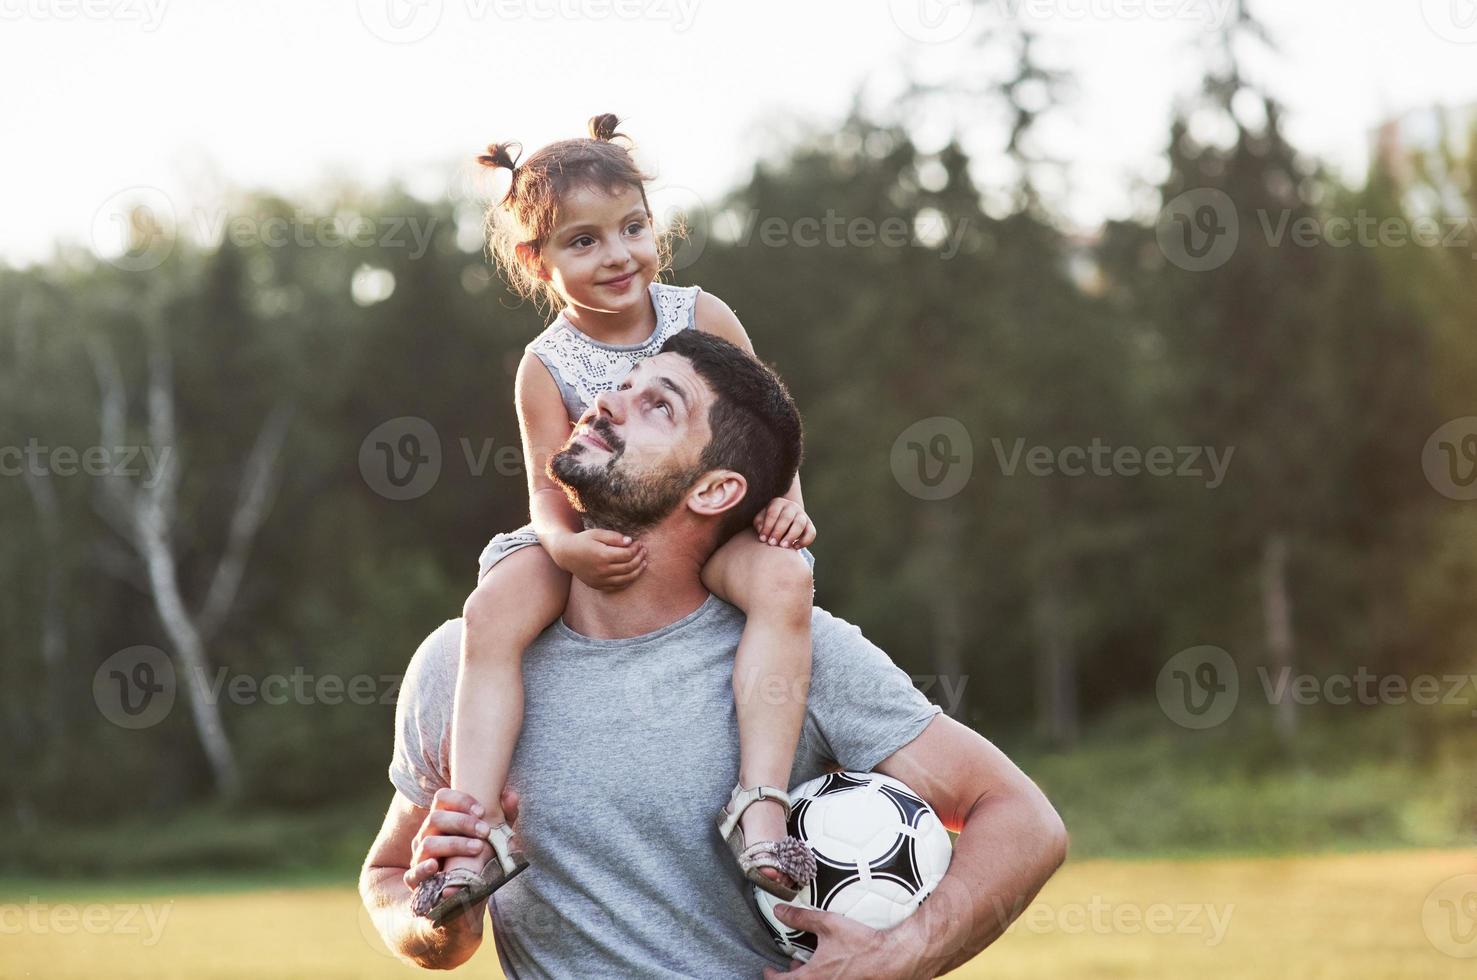 tout est question de famille. photo de papa avec sa fille dans une belle herbe et des bois en arrière-plan